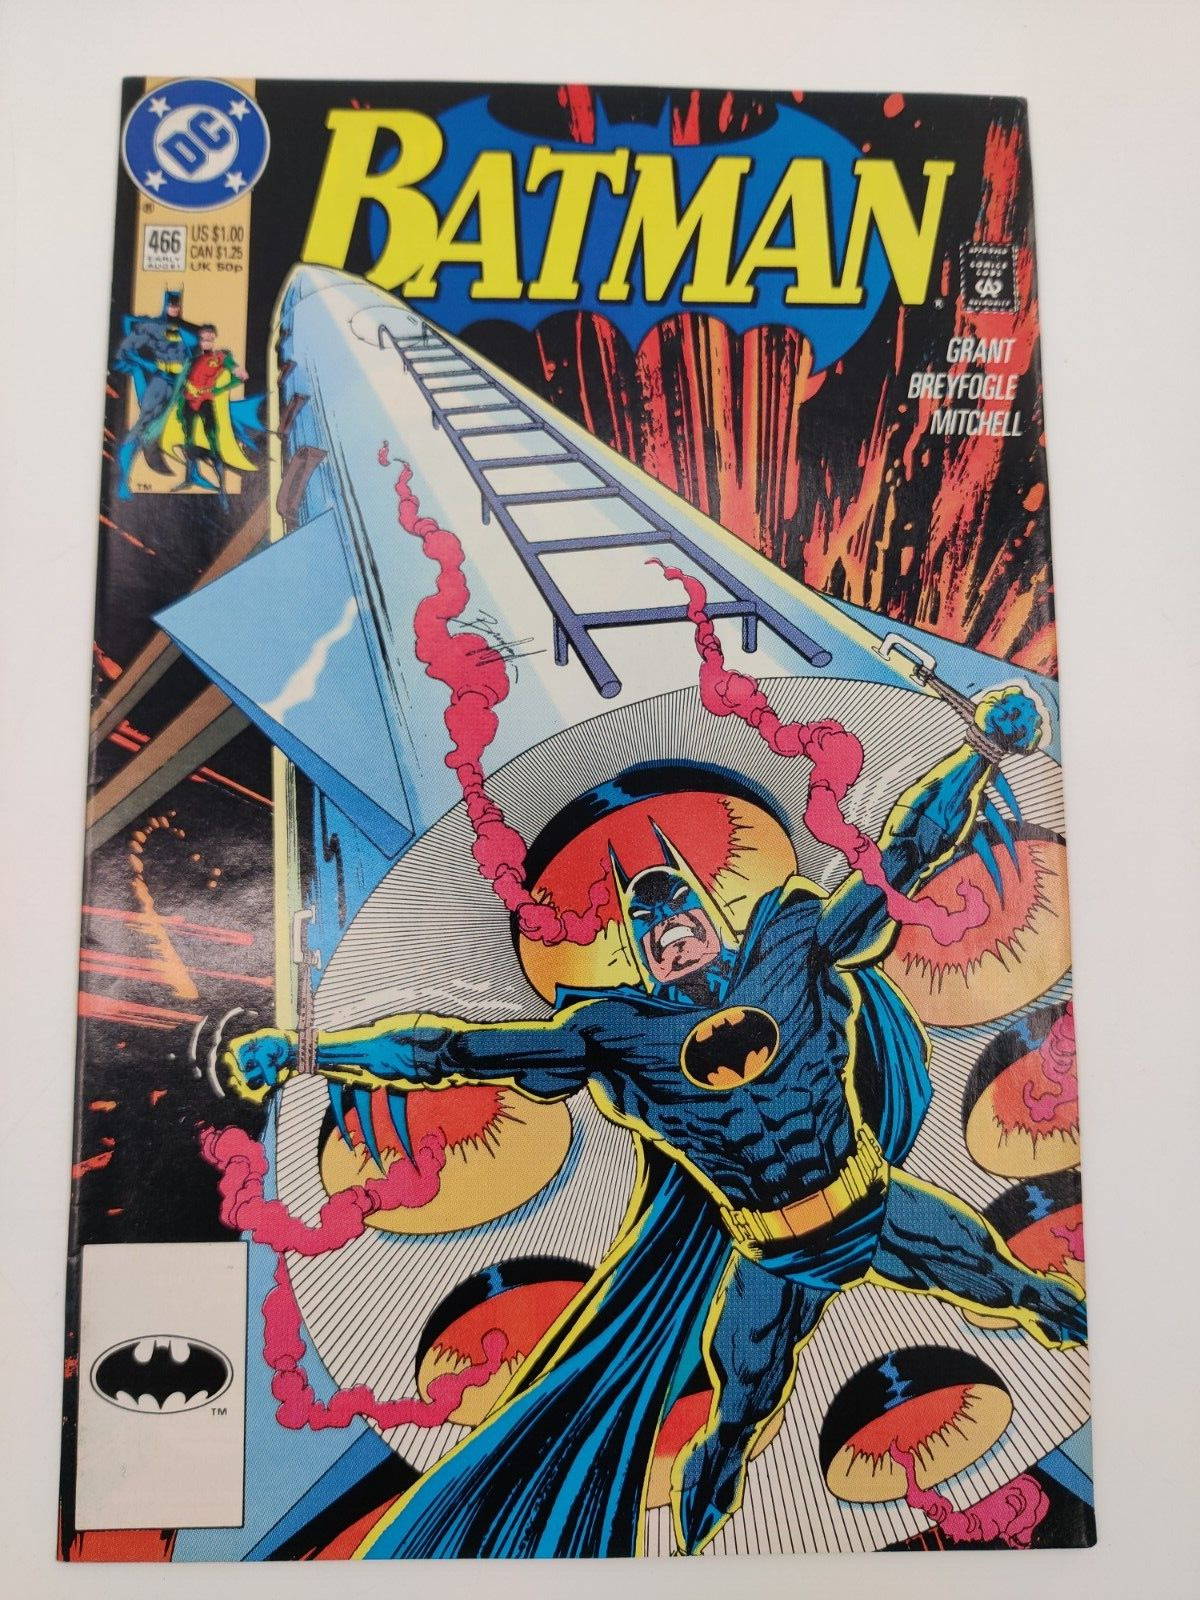 Batman #466 (DC Comics, Early August 1991)